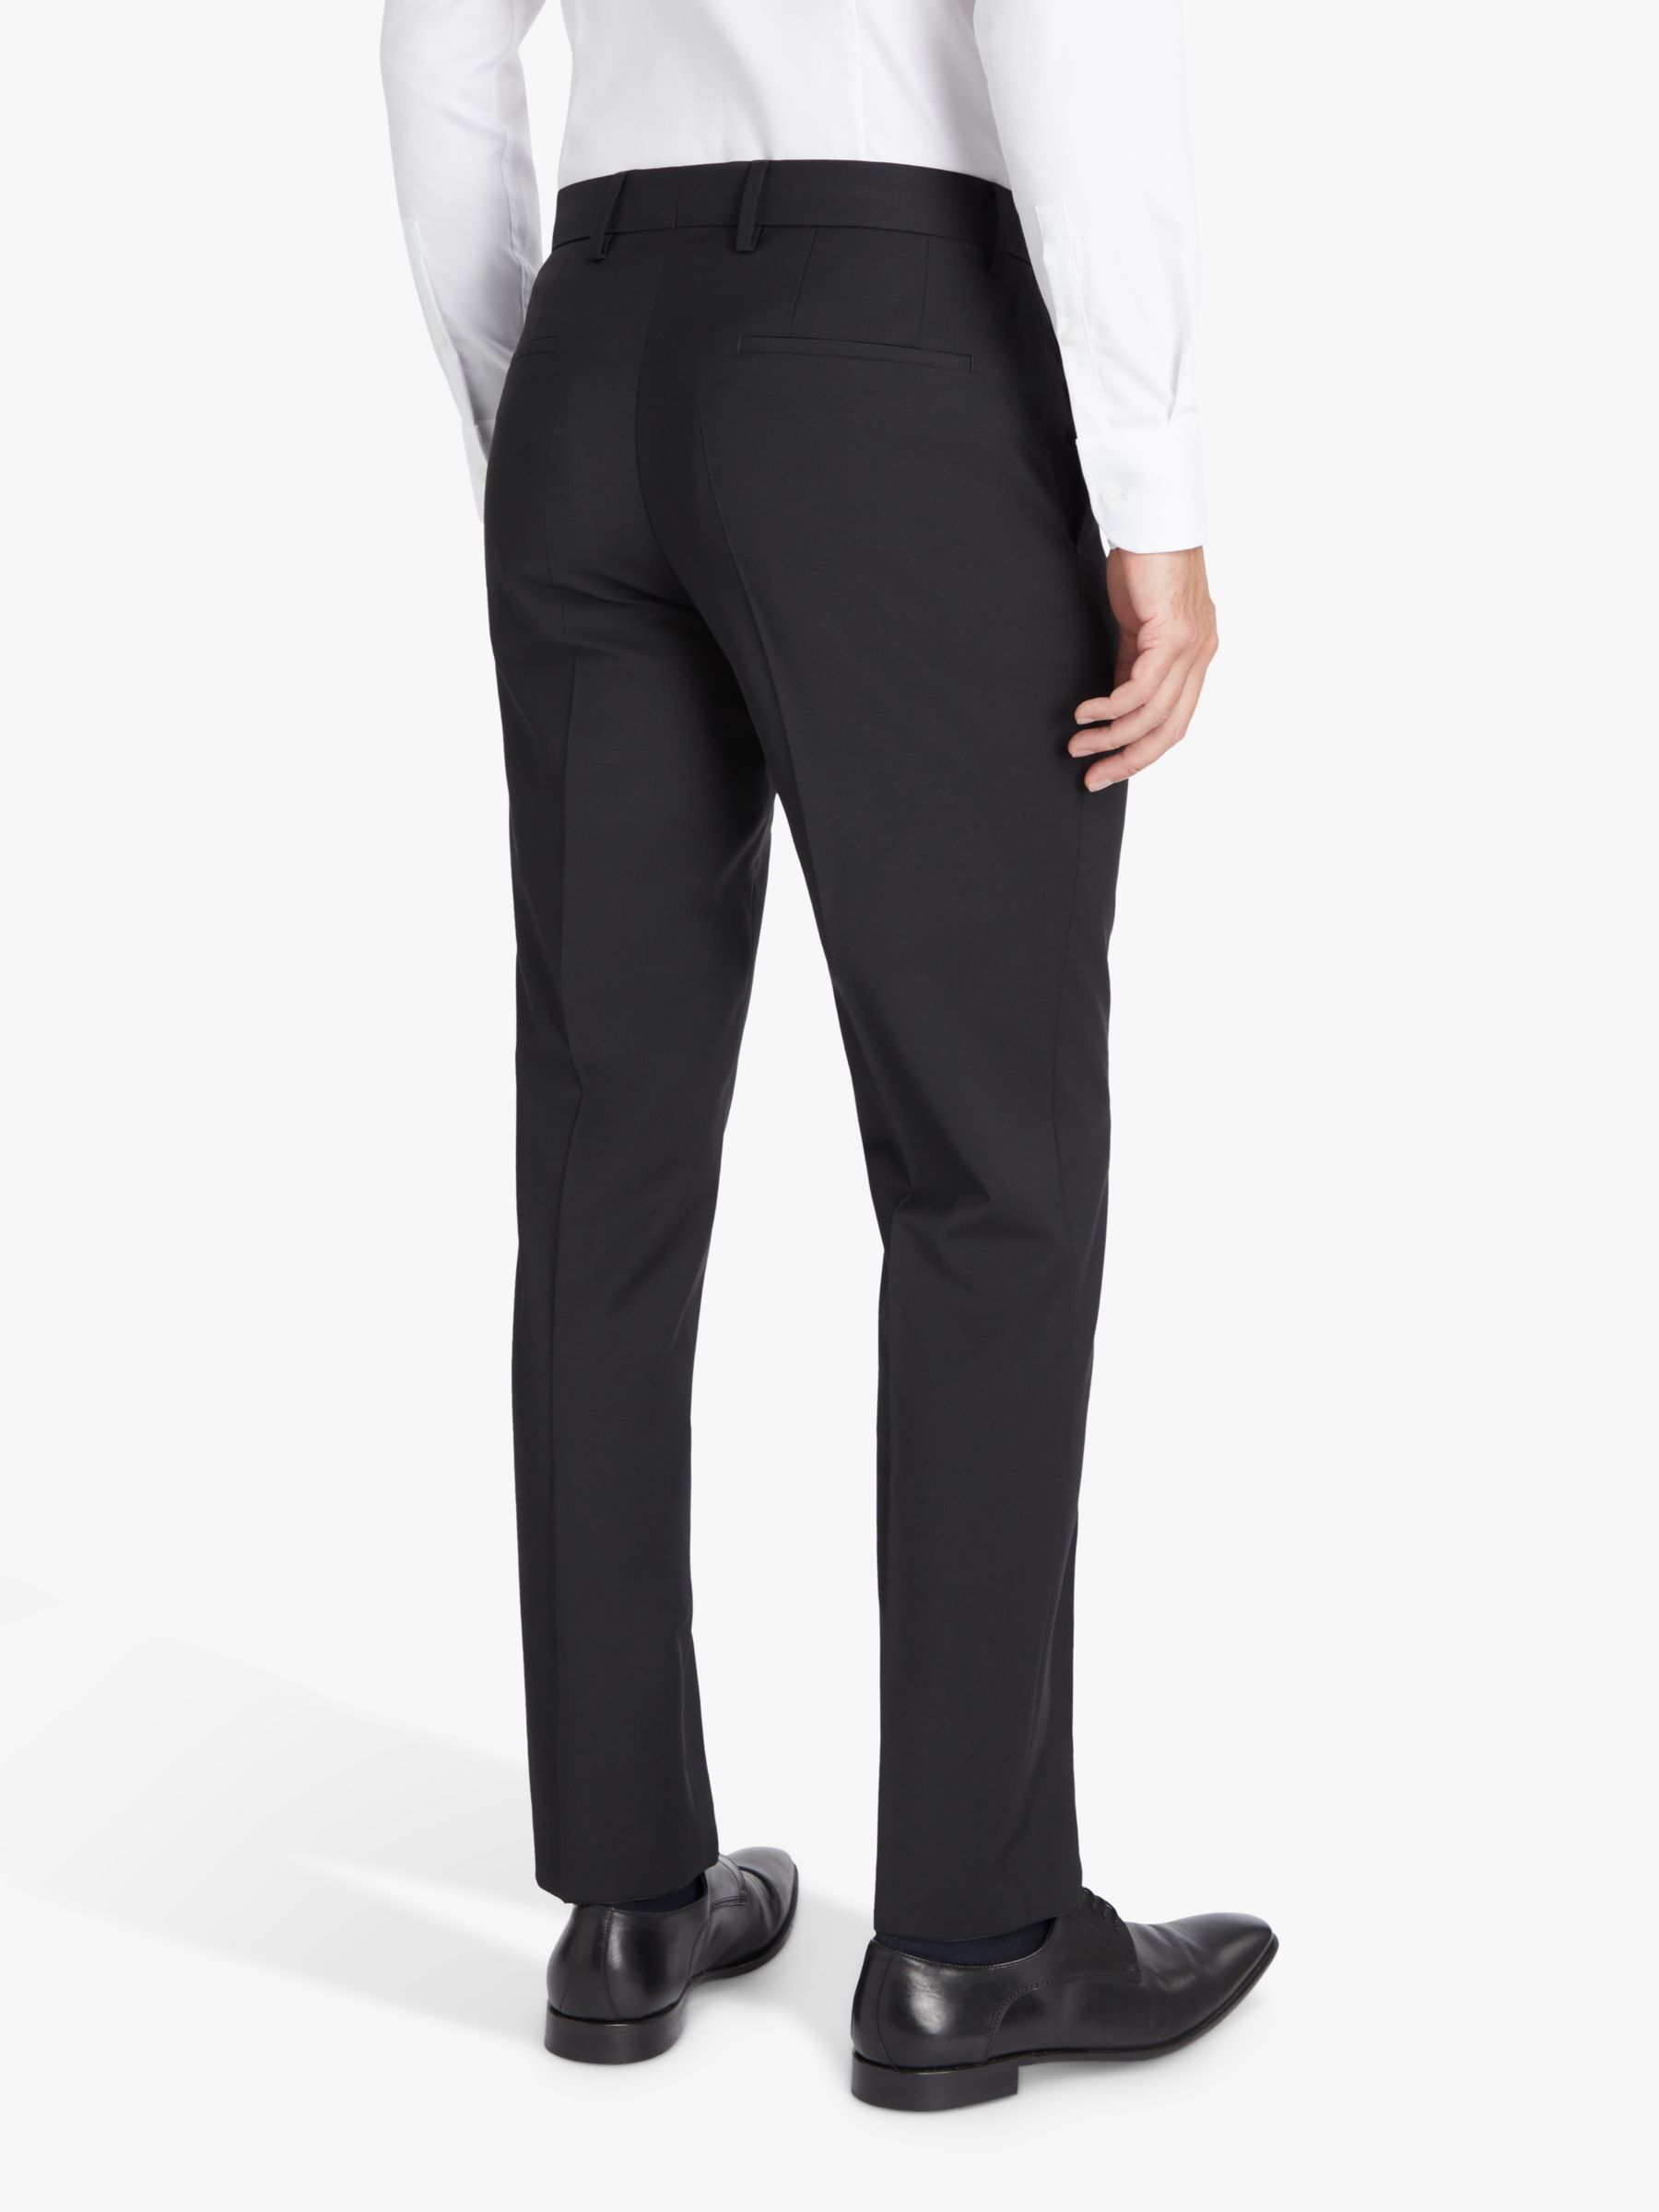 BOSS Genius Virgin Wool Slim Fit Suit Trousers, Black, 30R